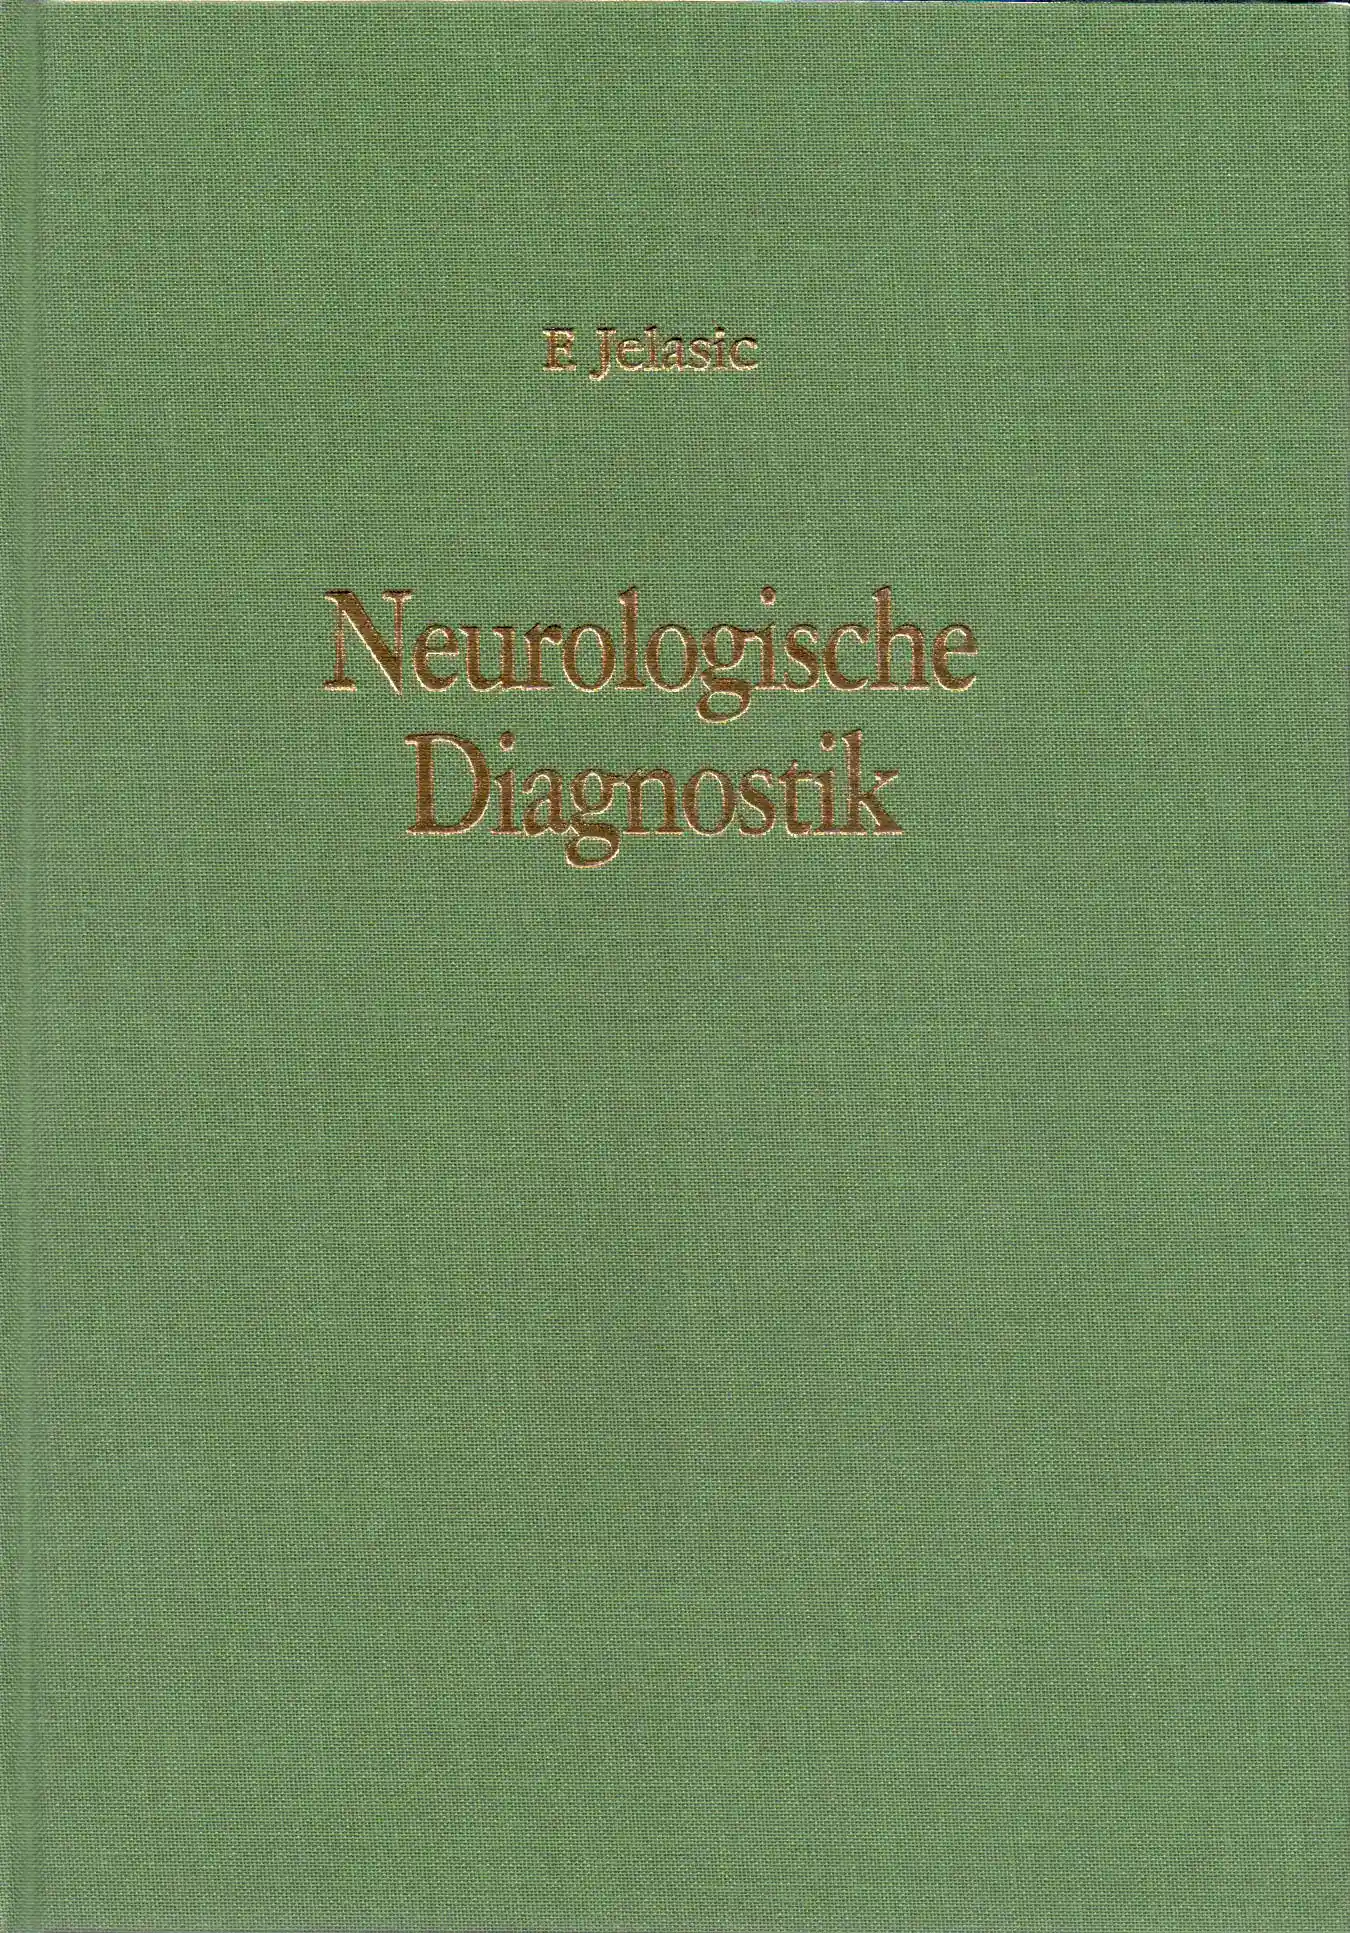  Forschungsarbeit: Neurologische Diagnostik